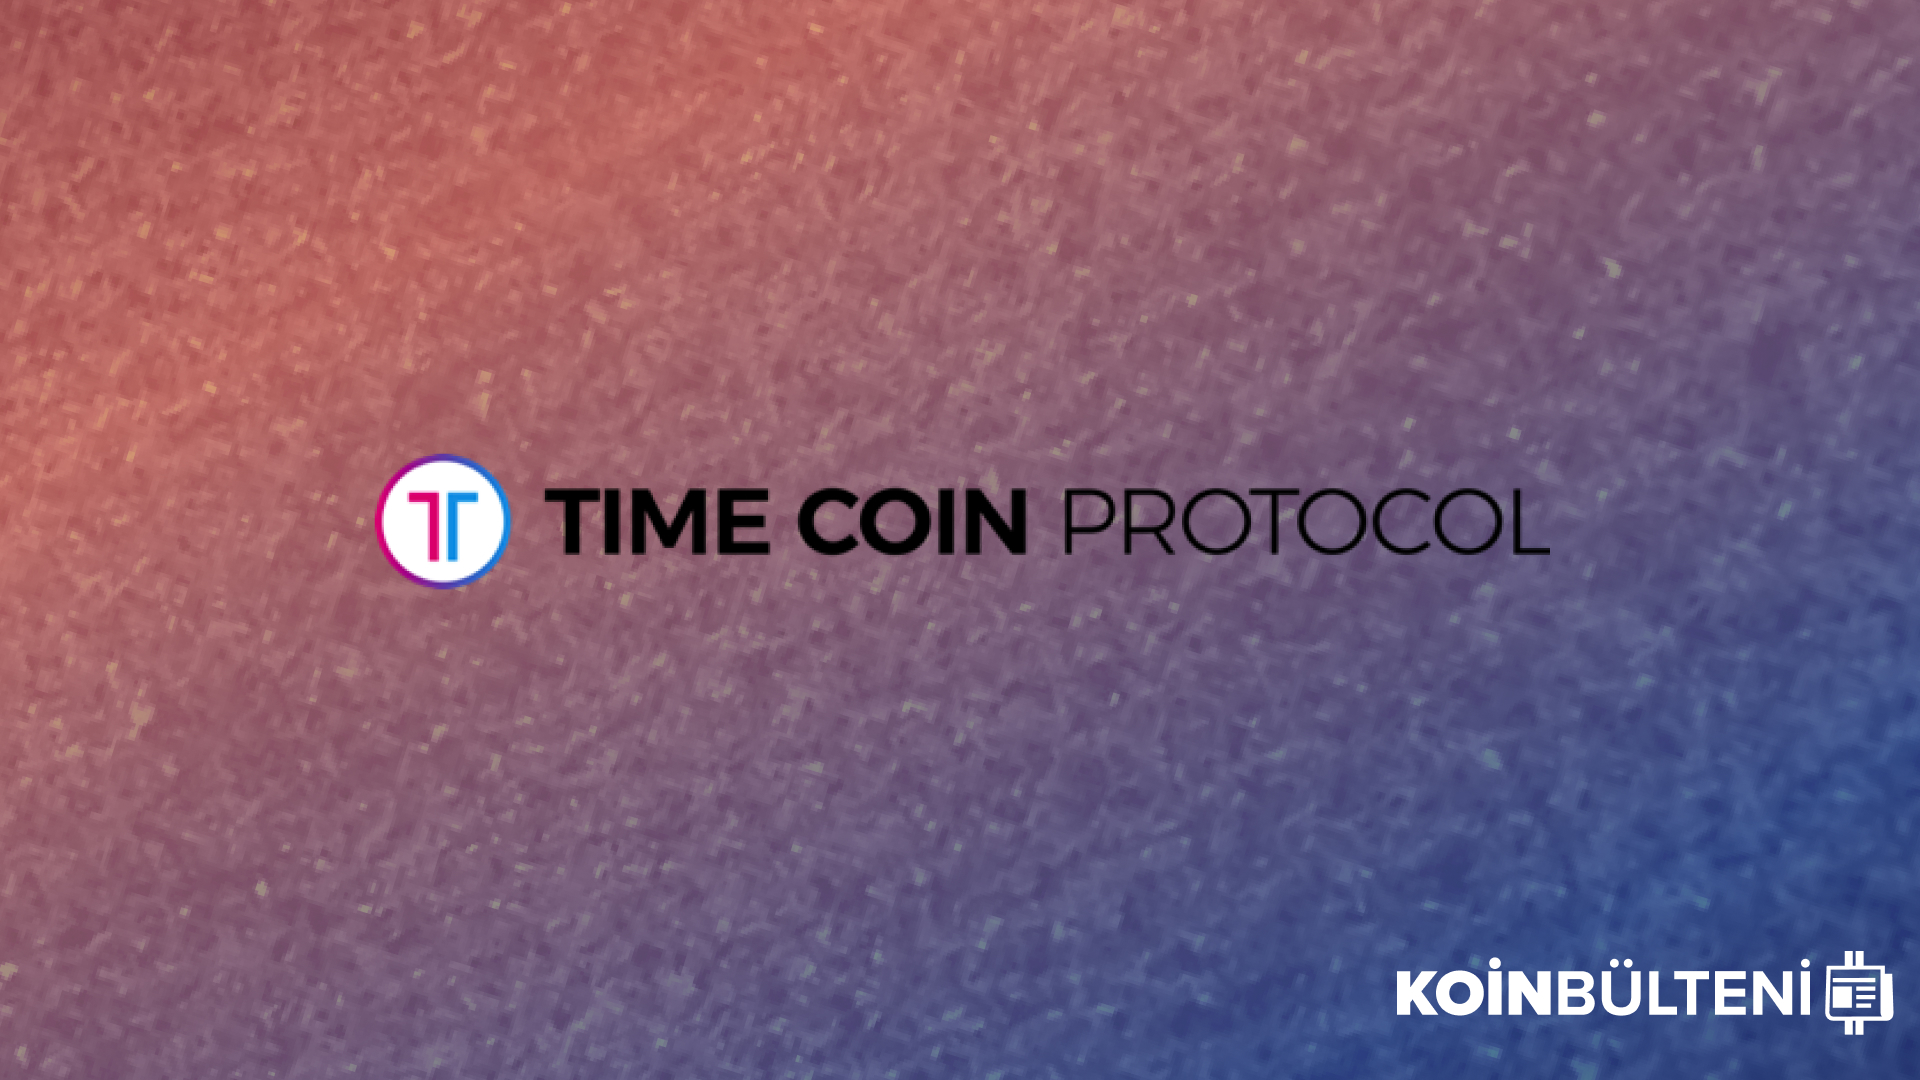 timecoin-time-coin-protocol-tcp-kripto-para-ico-coin-token-yatirim